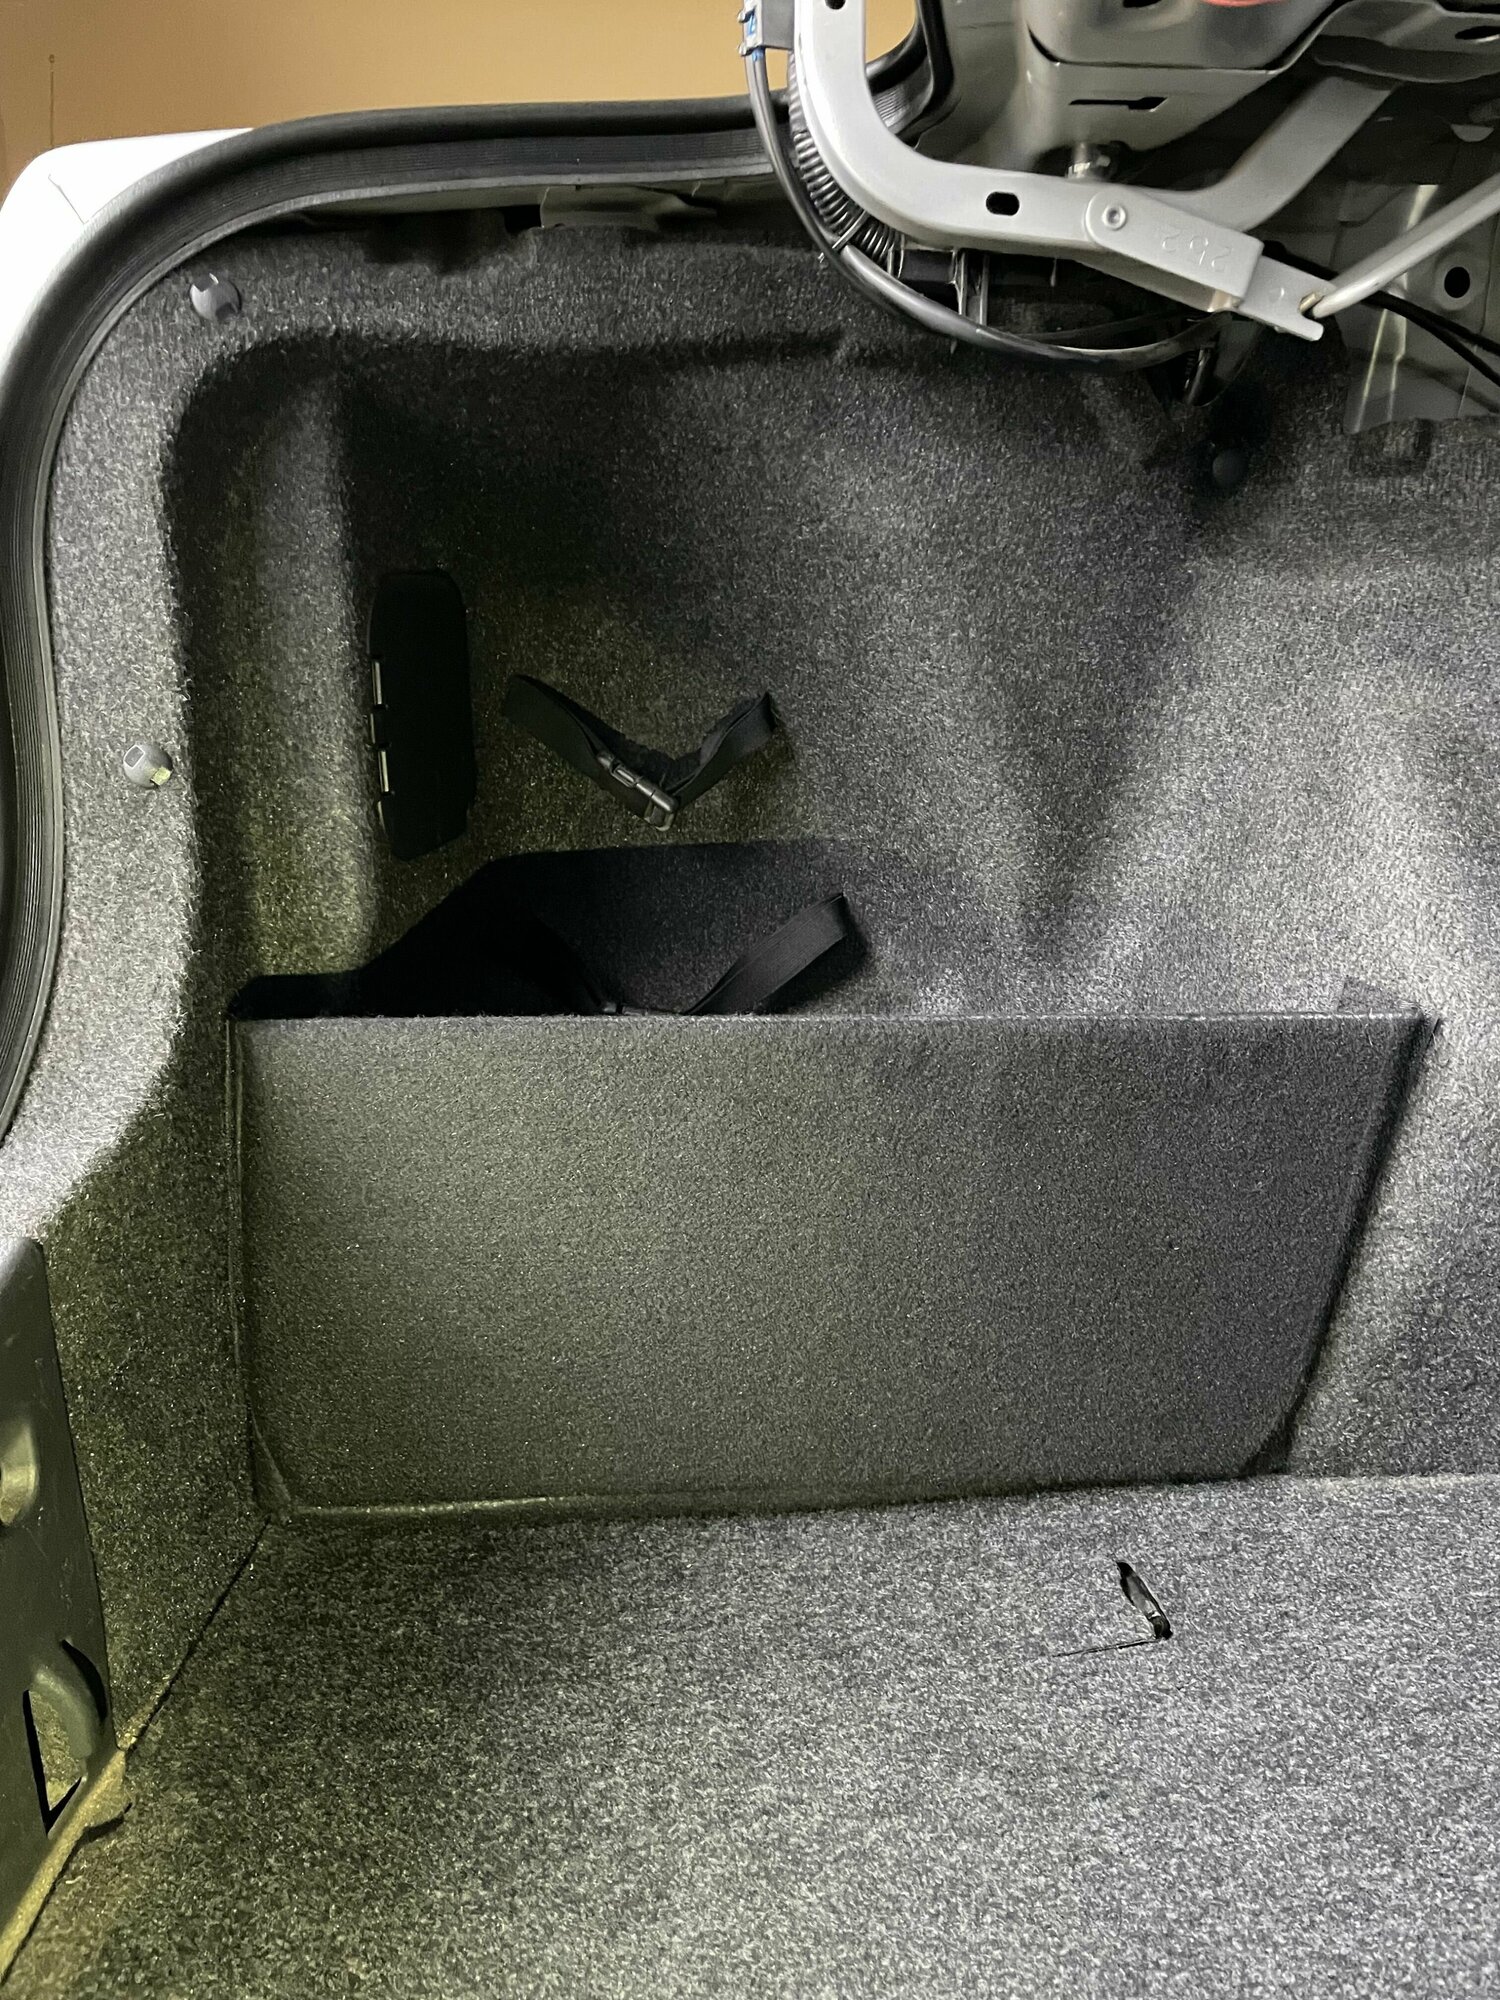 Органайзер в багажник для автомобиля Toyota Corolla e150. Багажные карманы для Тойота Королла 10. Одна панель только в левую нишу